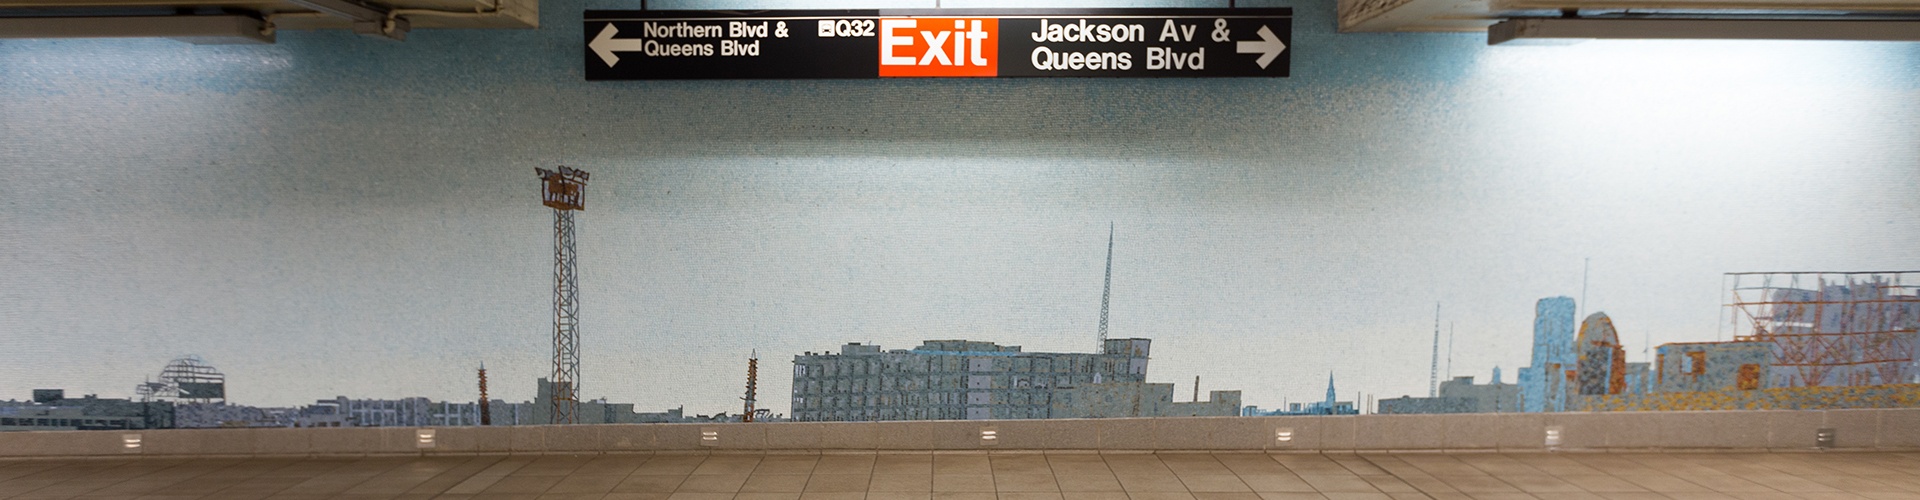 Dixon's Favorite Queens Subway Art